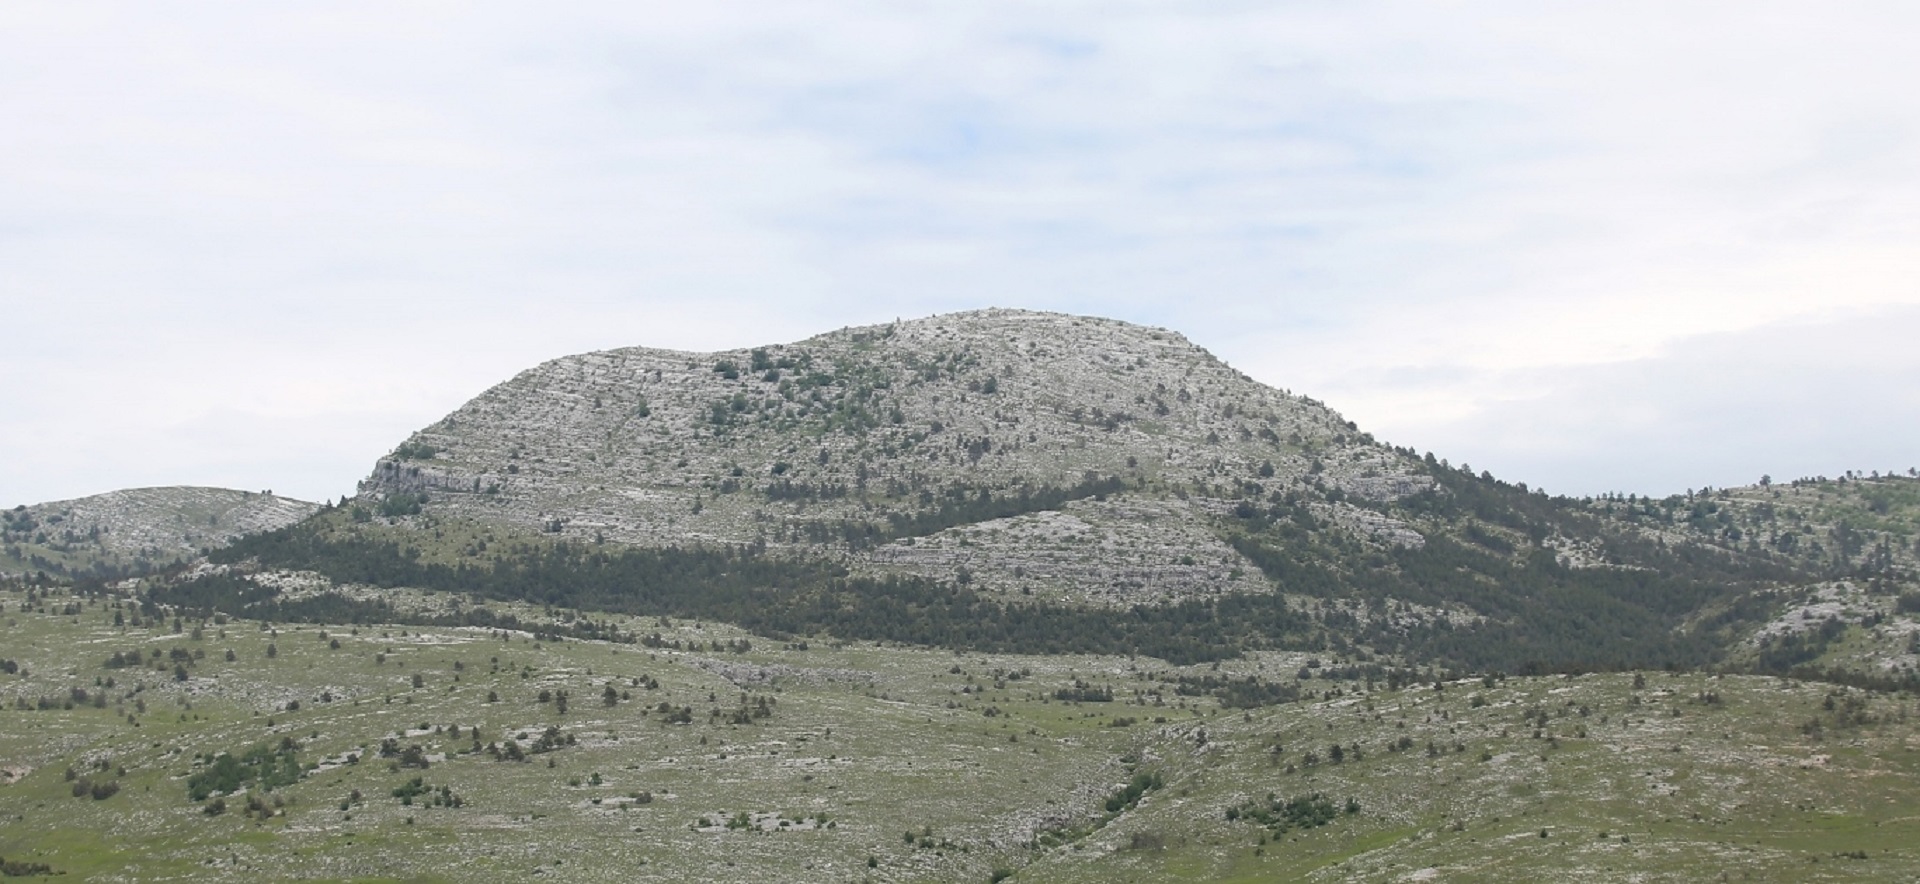 23.05.2020.,Dinara - Pogled na  Dinaru, najvisi  hrvatski vrh.
Photo: Dusko Jaramaz/PIXSELL